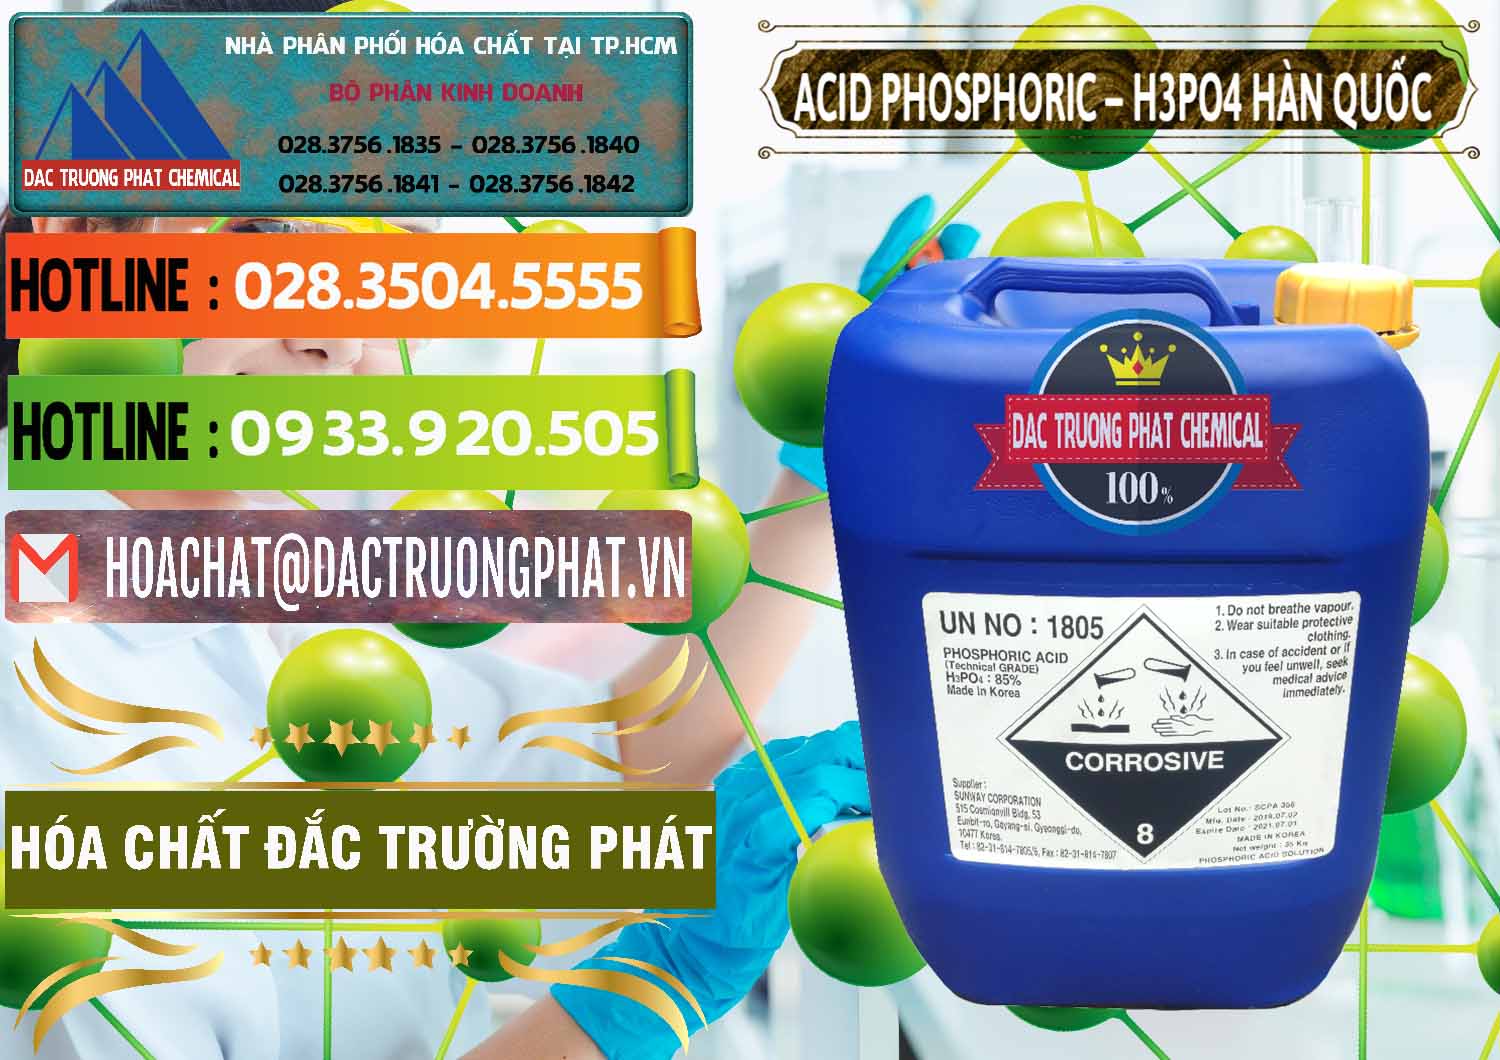 Nơi cung ứng & bán Acid Phosphoric – H3PO4 85% Can Xanh Hàn Quốc Korea - 0016 - Đơn vị chuyên cung cấp & nhập khẩu hóa chất tại TP.HCM - cungcaphoachat.com.vn